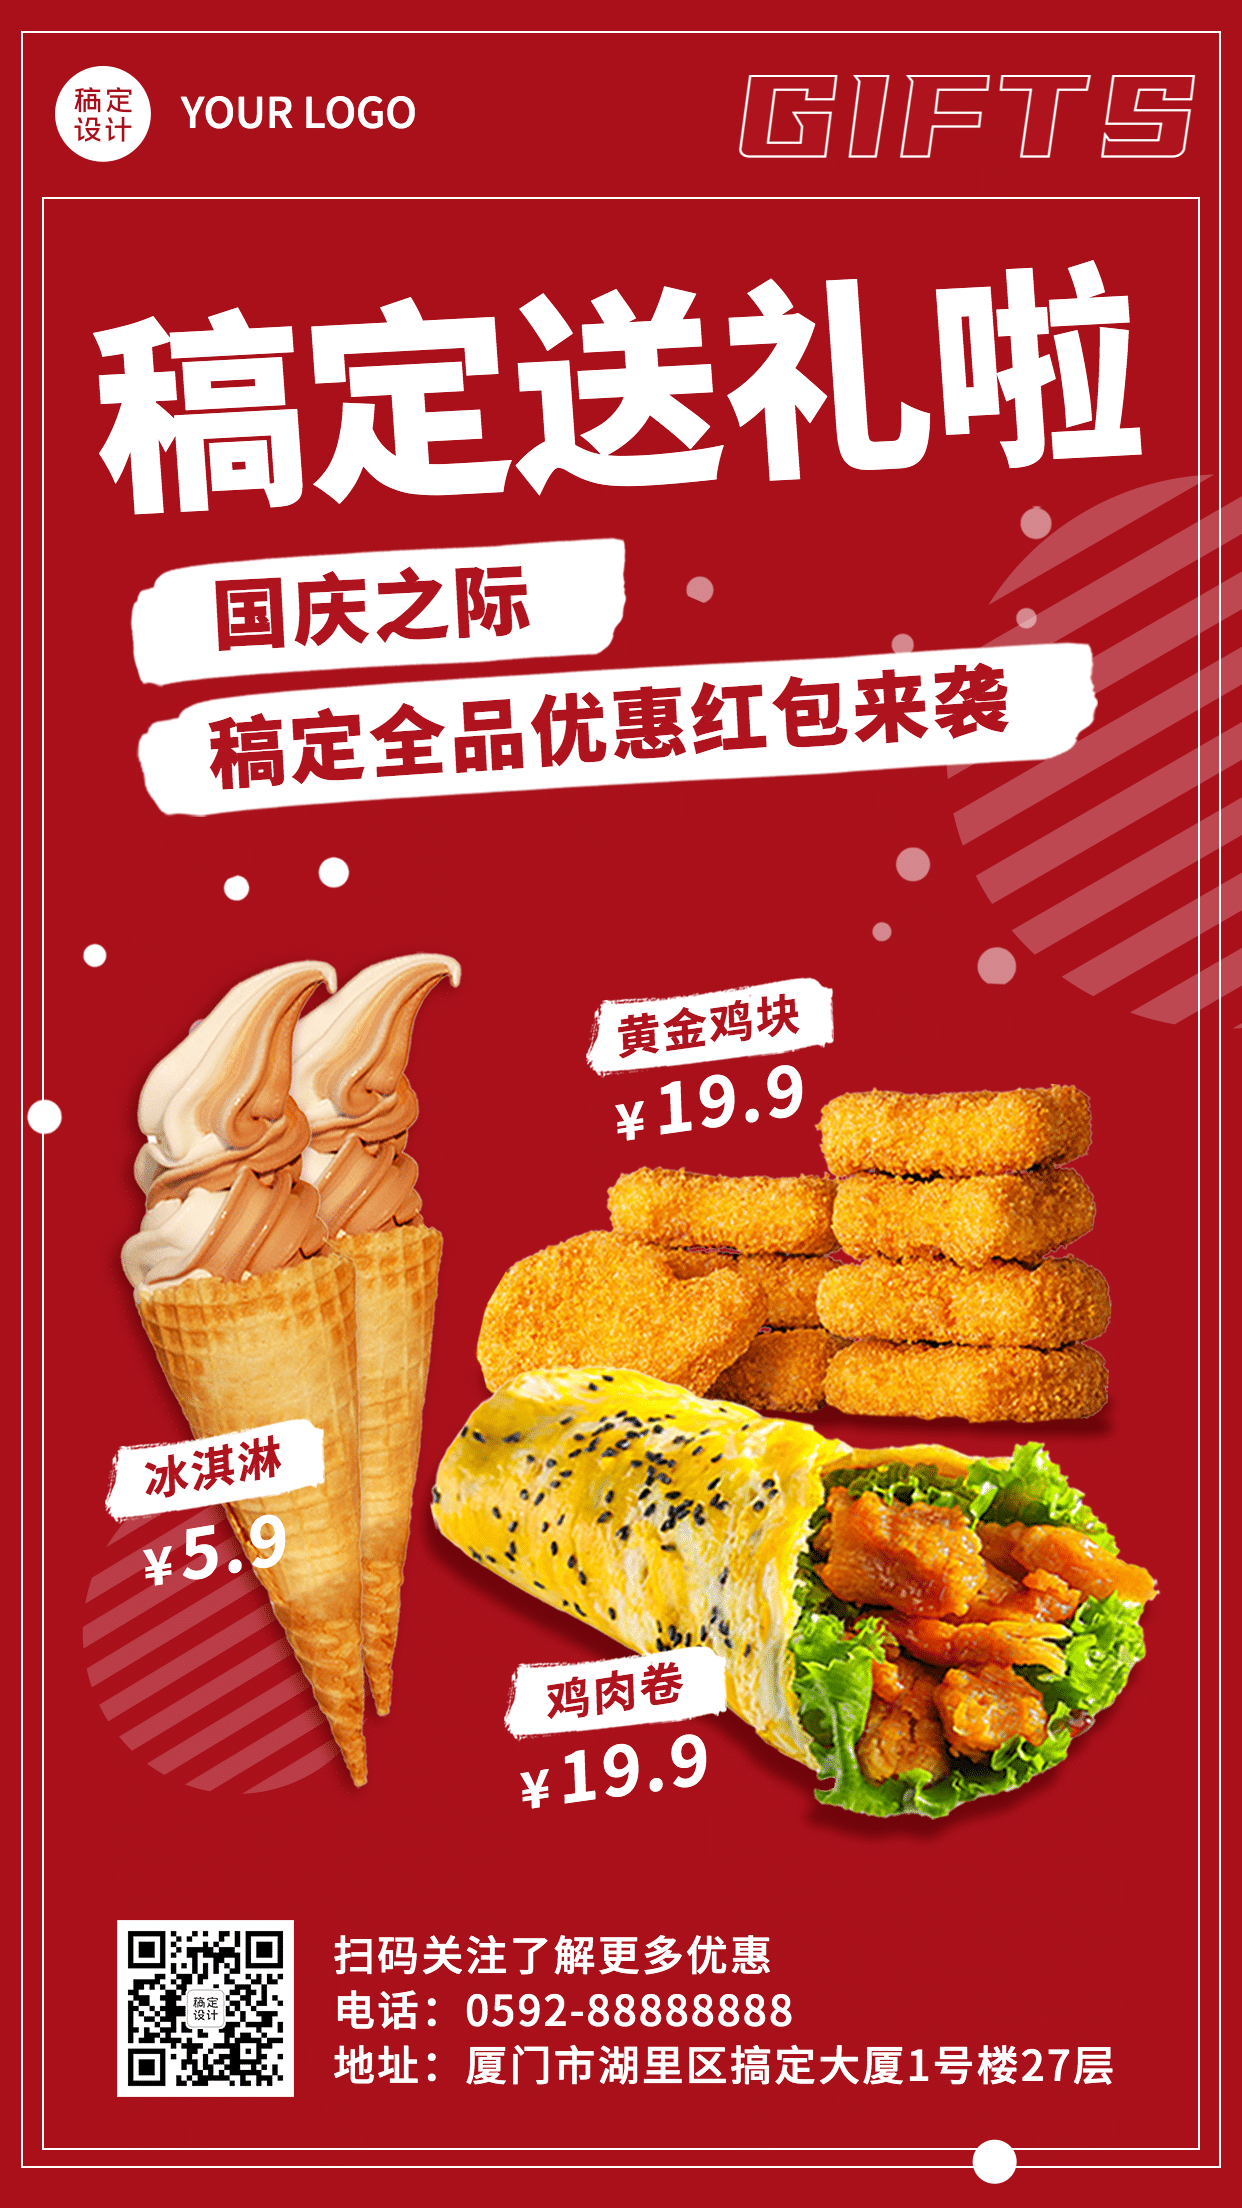 十一国庆黄金周餐饮营销手机海报